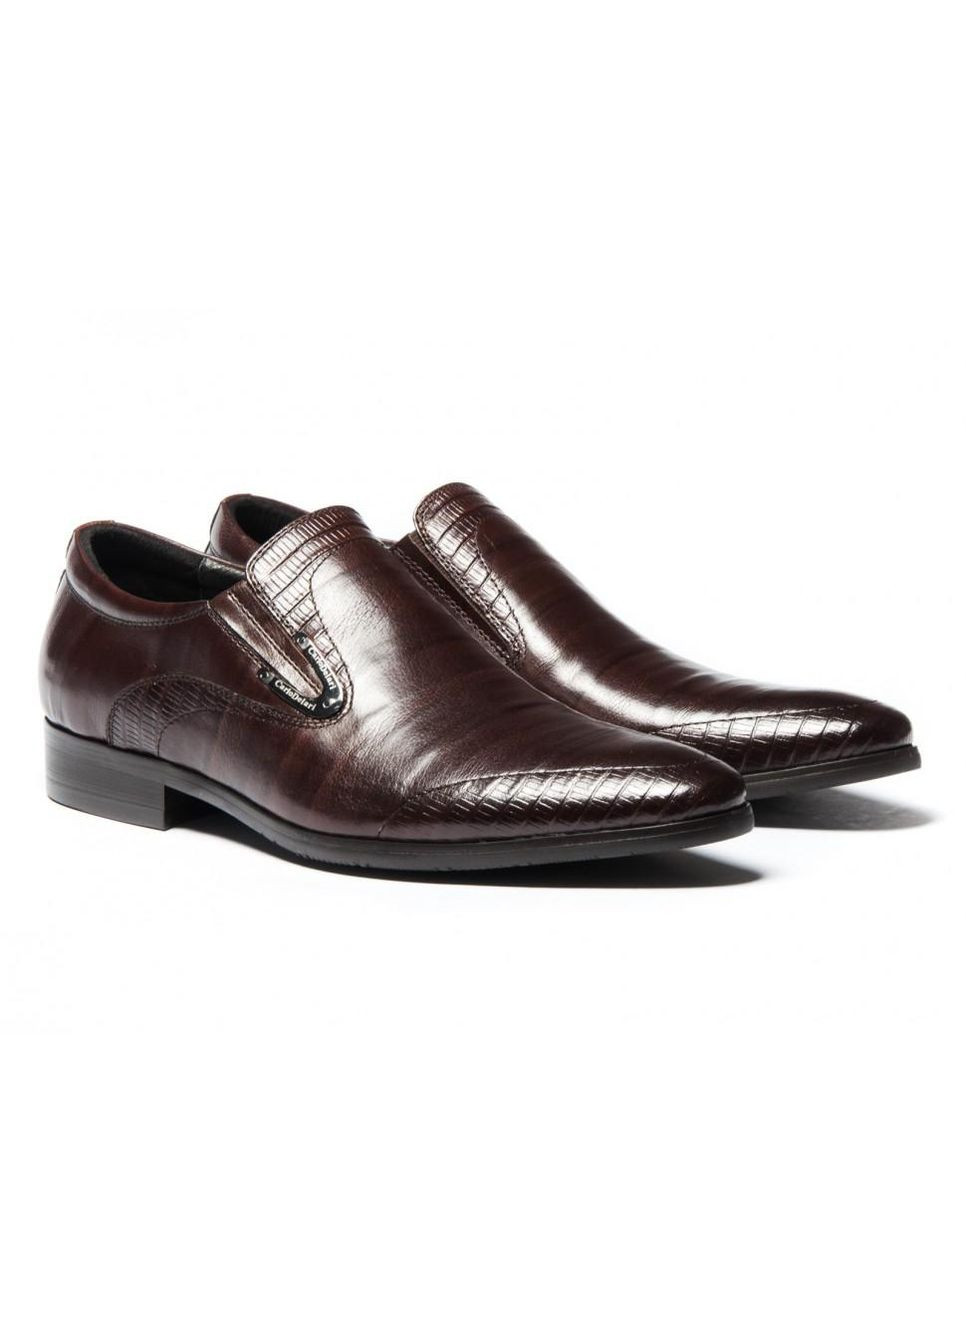 Коричневые туфли 7133142 цвет коричневый Carlo Delari